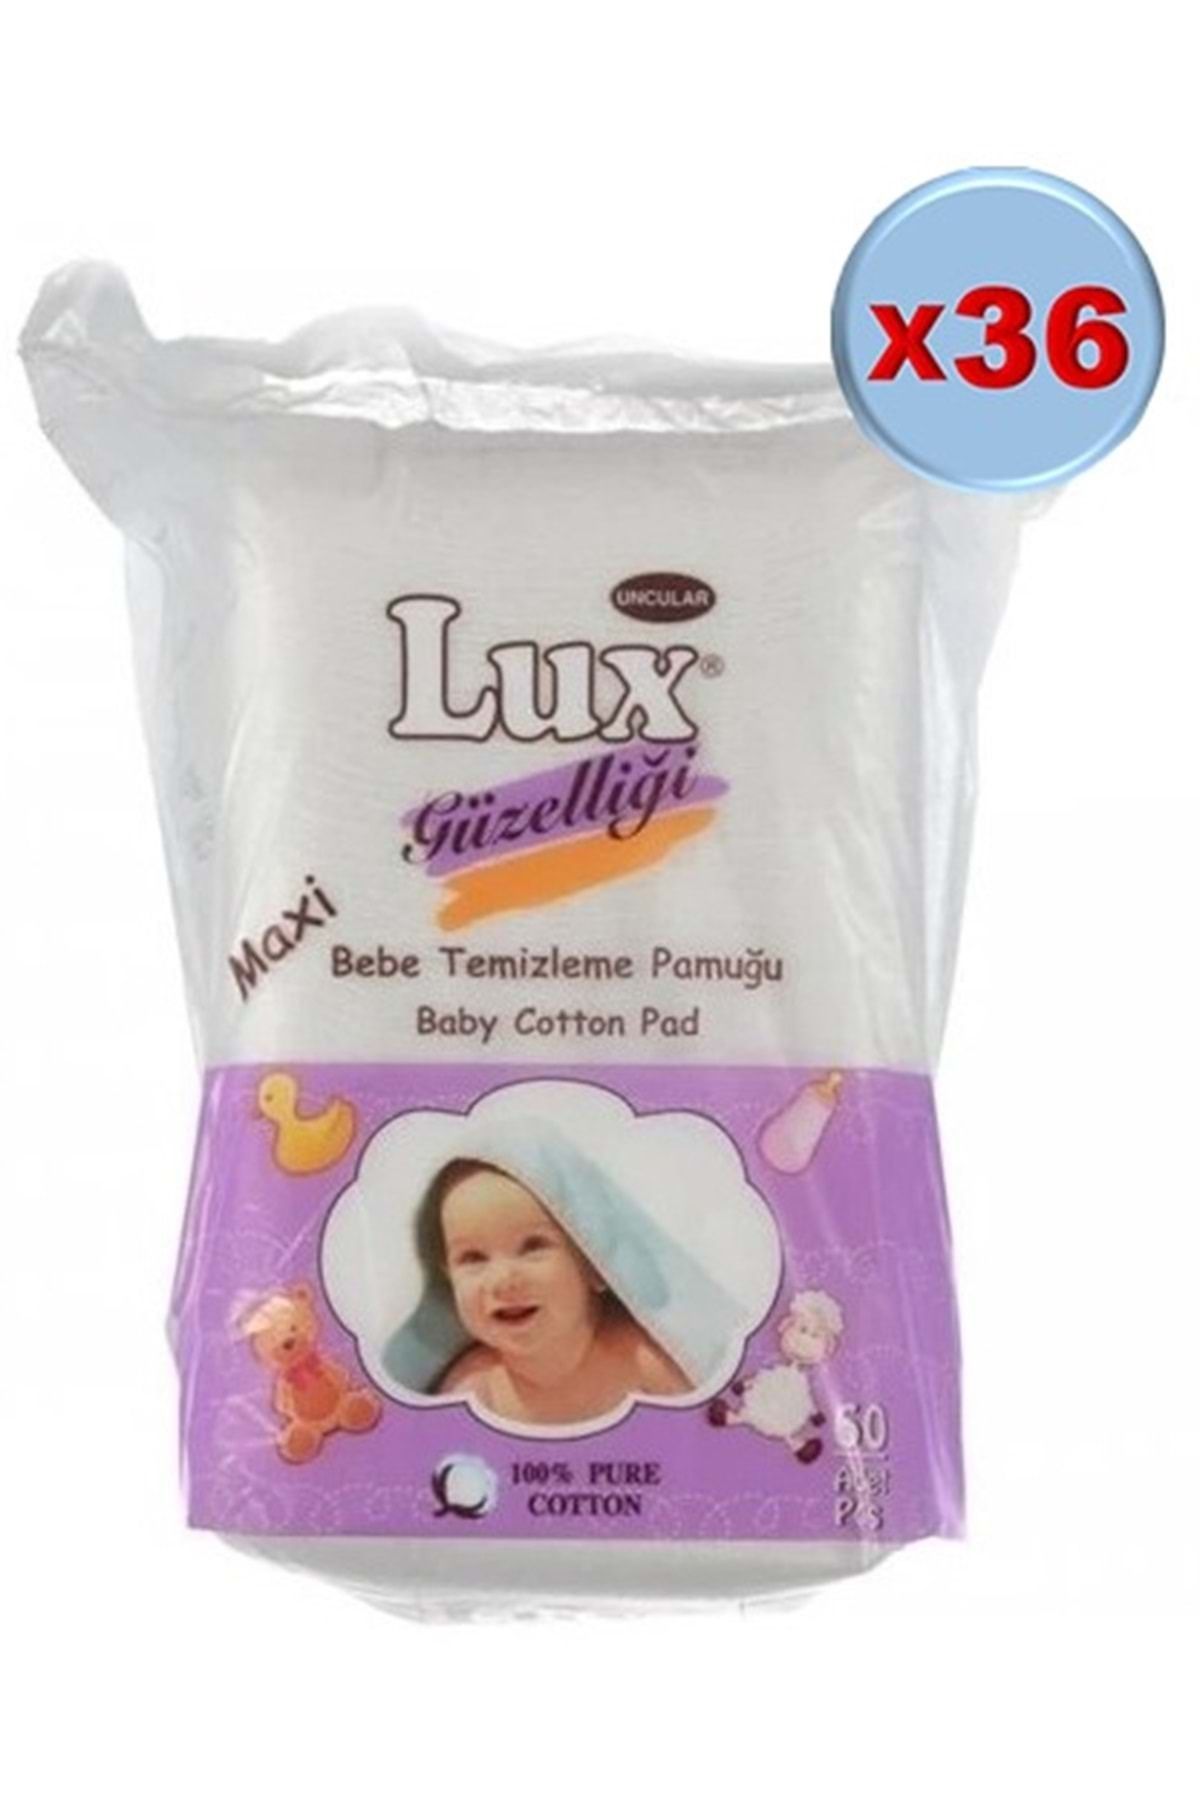 LUX Lüx Bebek Temizleme Pamuğu 2160 Adet (36pk*60)